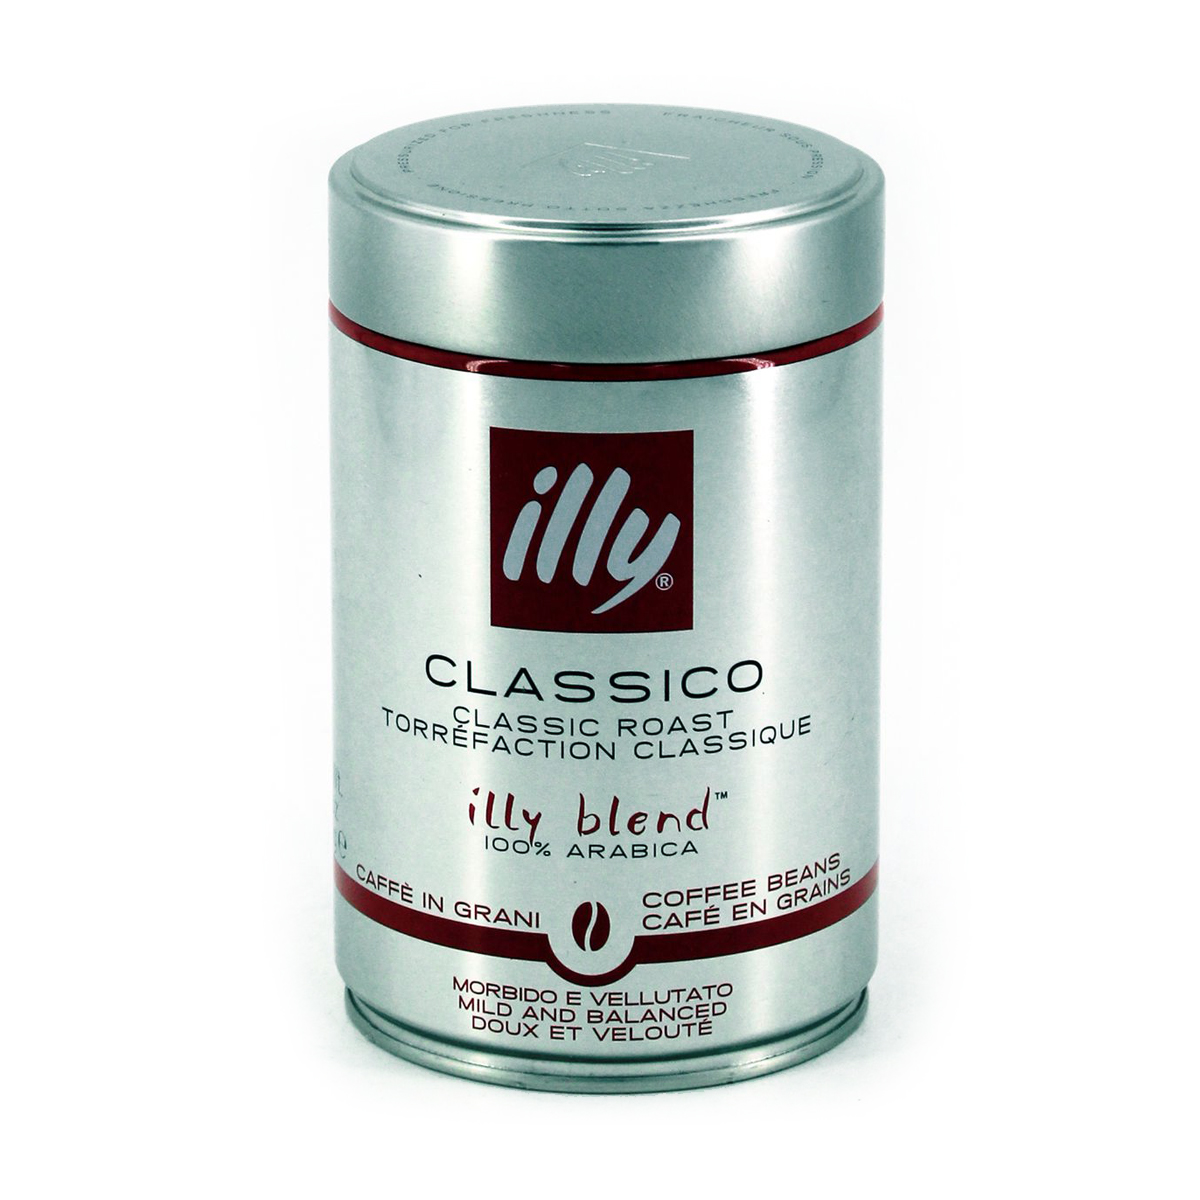 Illy Caffe' Classico in Grani Morbido e Vellutato 250g